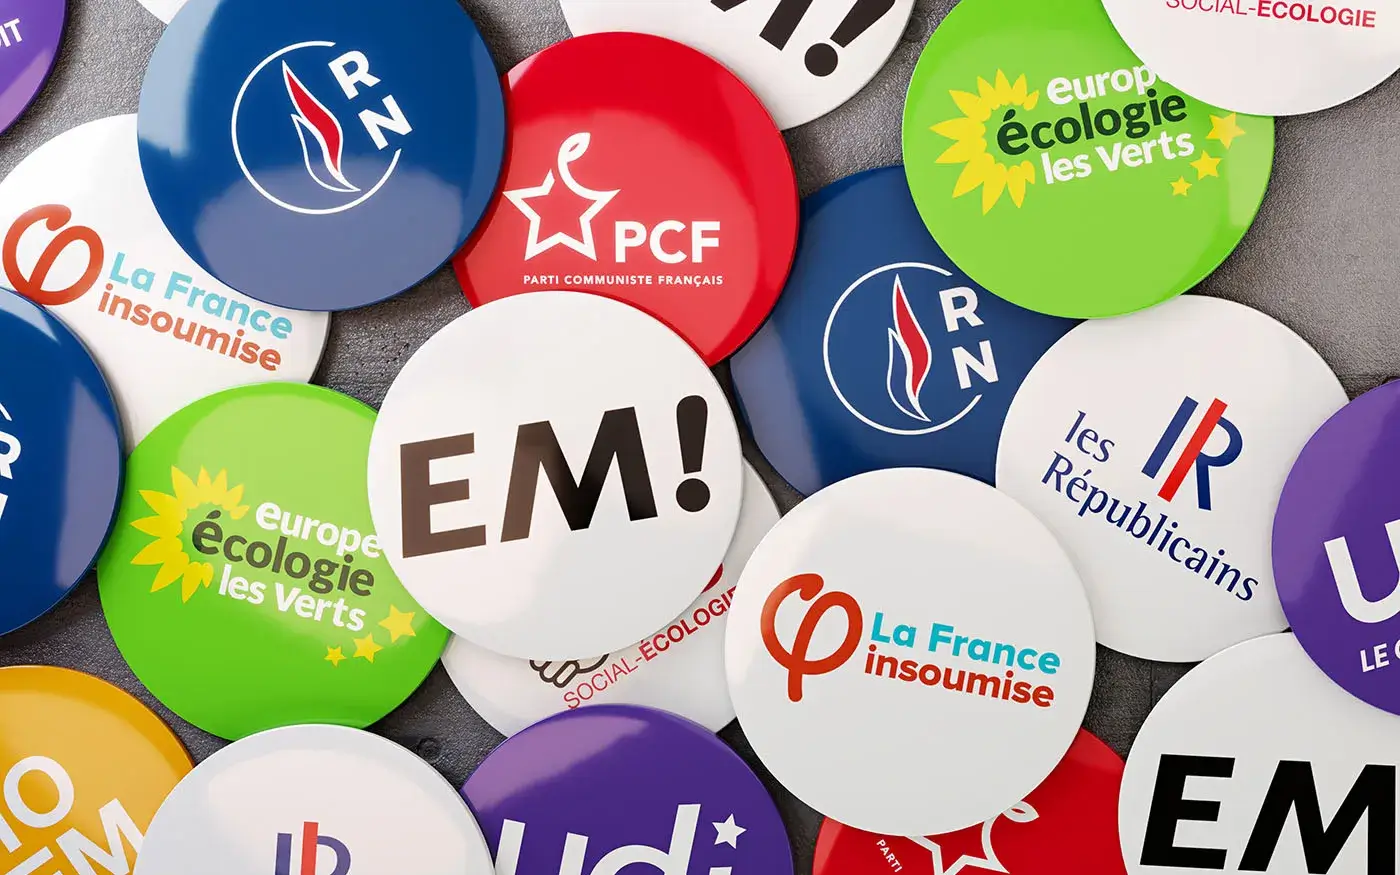 Des pins représentants les logos de différents partis politiques français